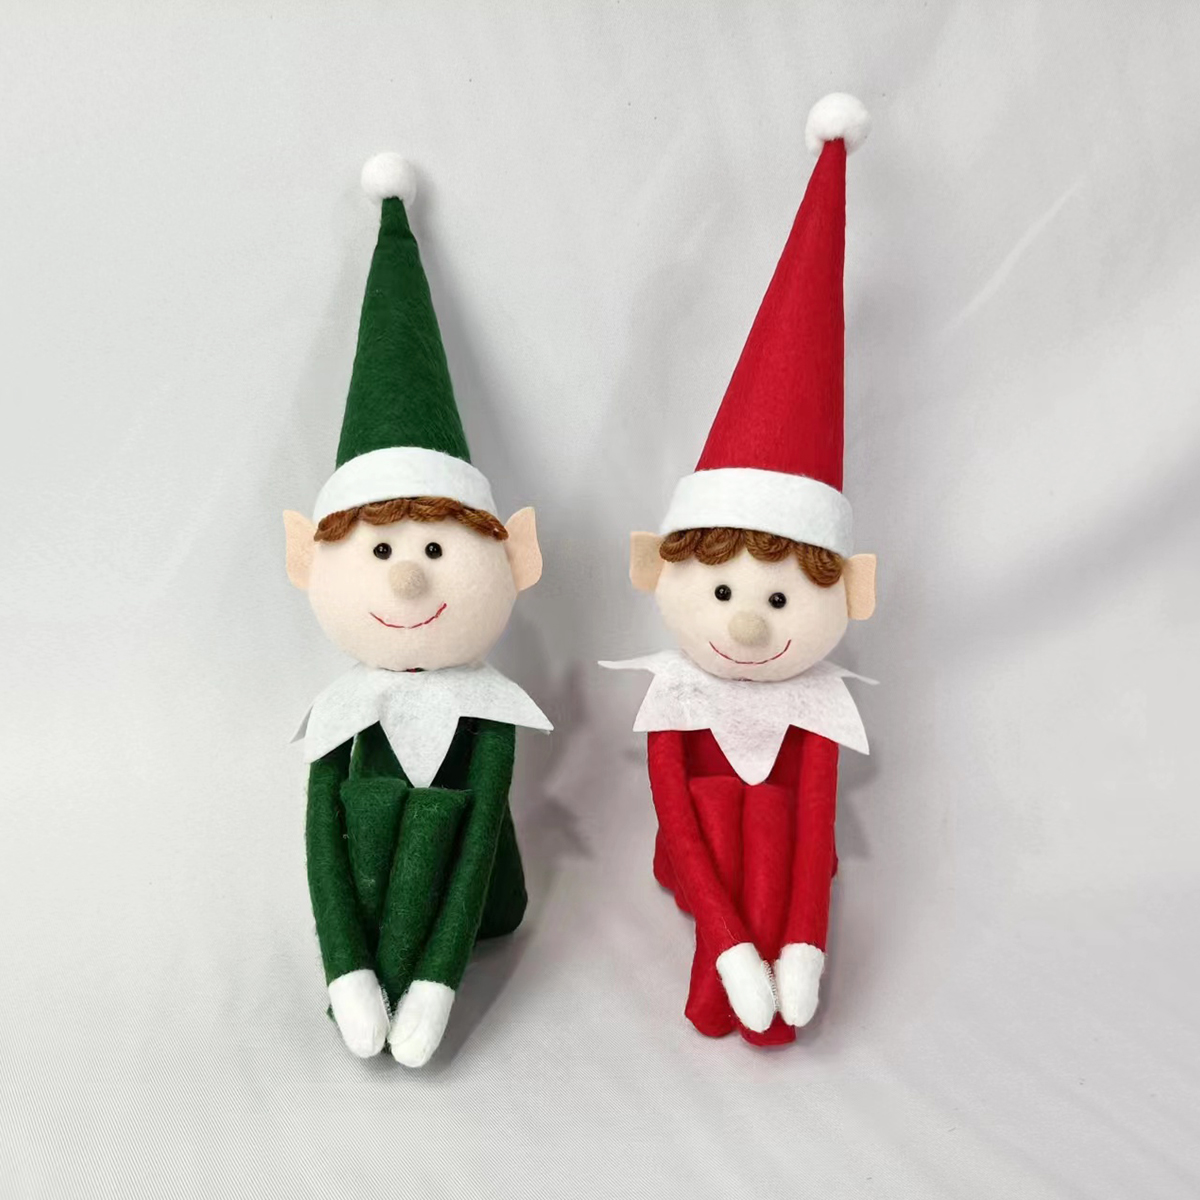 귀여운 크리스마스 미니 엘프 인형 - 축제의 즐거움을 위한 휴일 장난감!